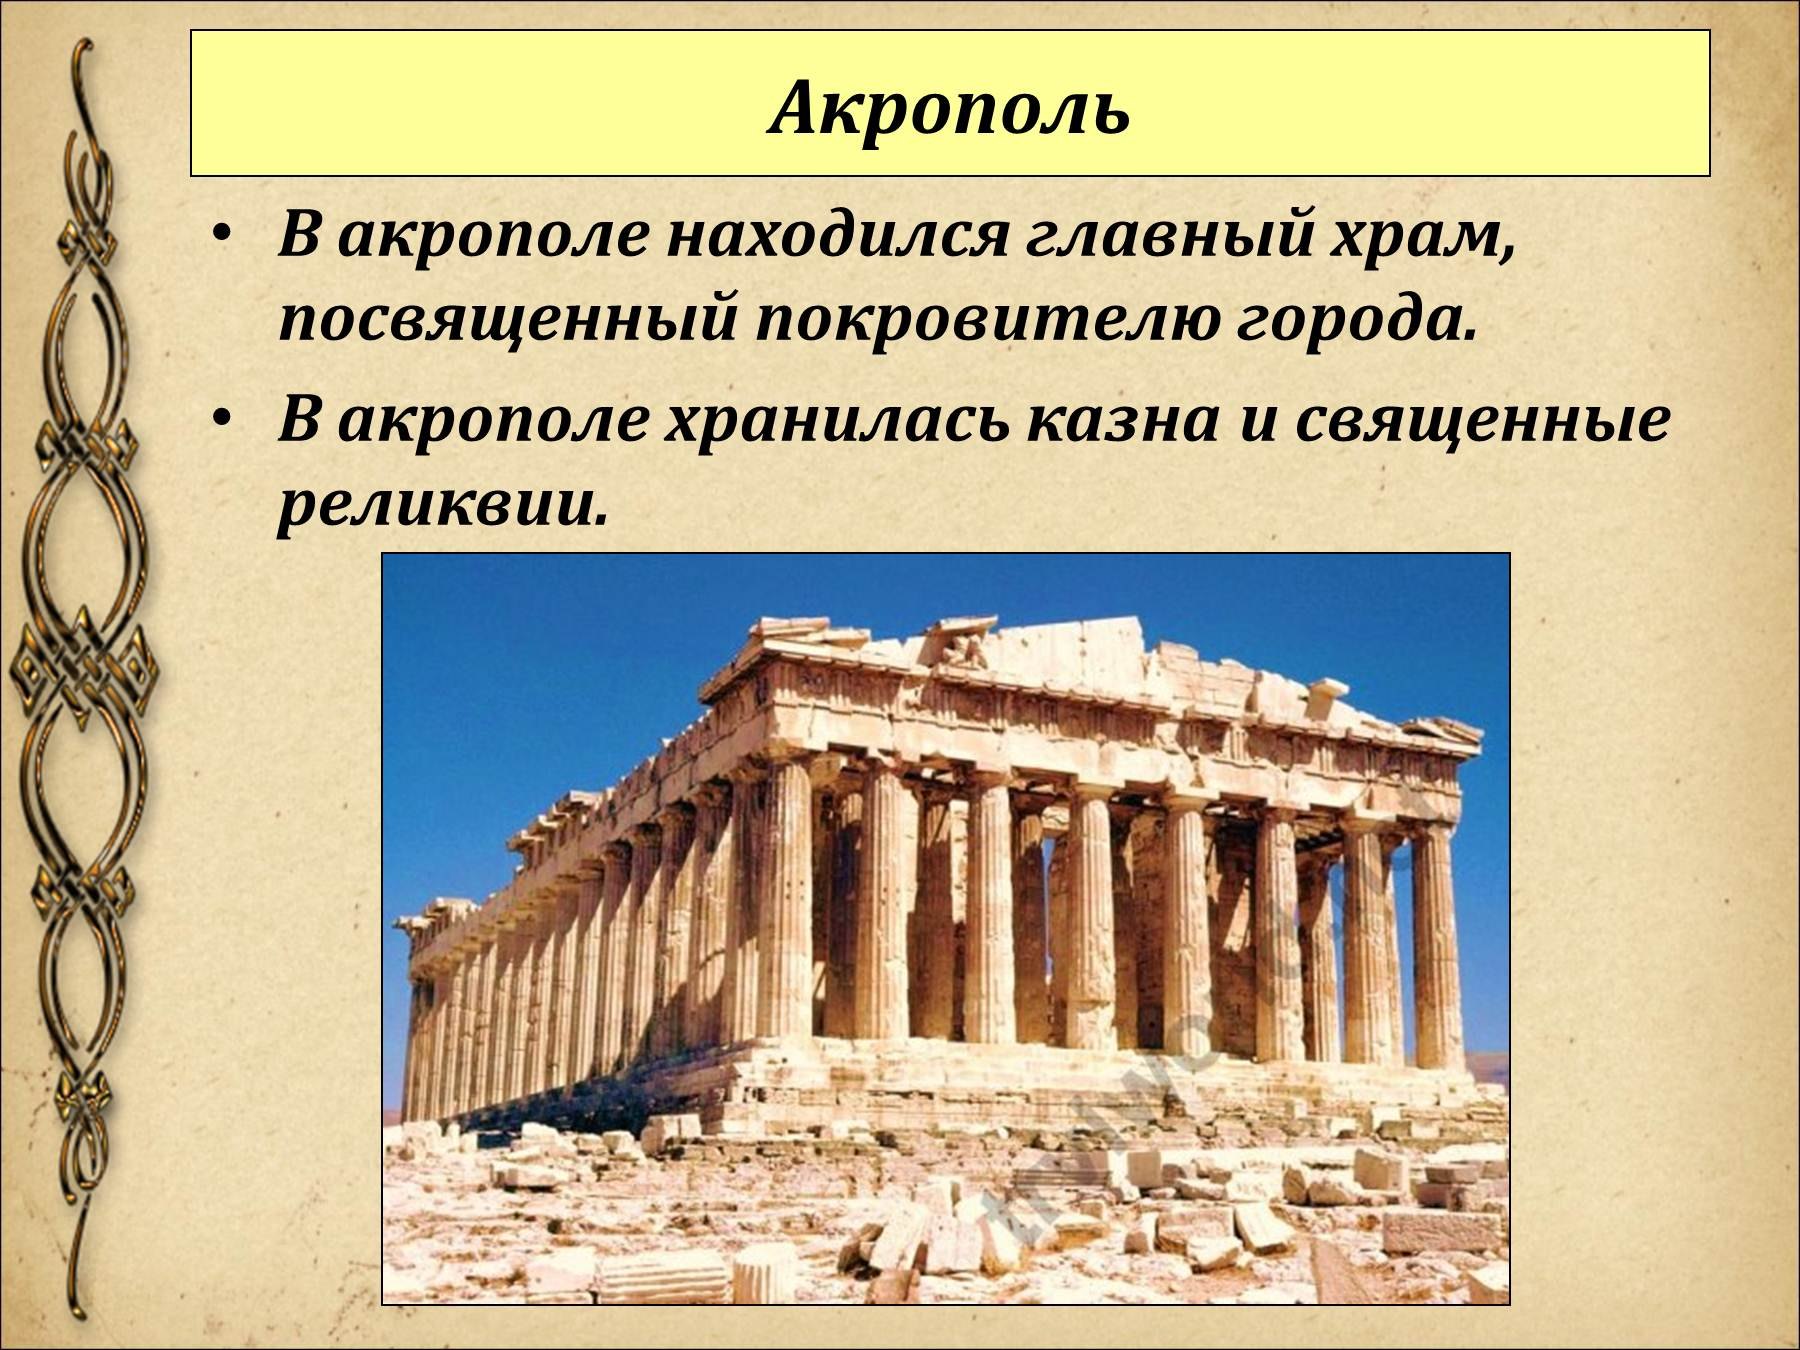 Древняя греция 5 класс самое главное. Акрополь в древней Греции 5 класс. Акрополь Греция история 5 класс. Храмы Акрополя в древней Греции 5 класс. Акрополь это по истории 5 класс.